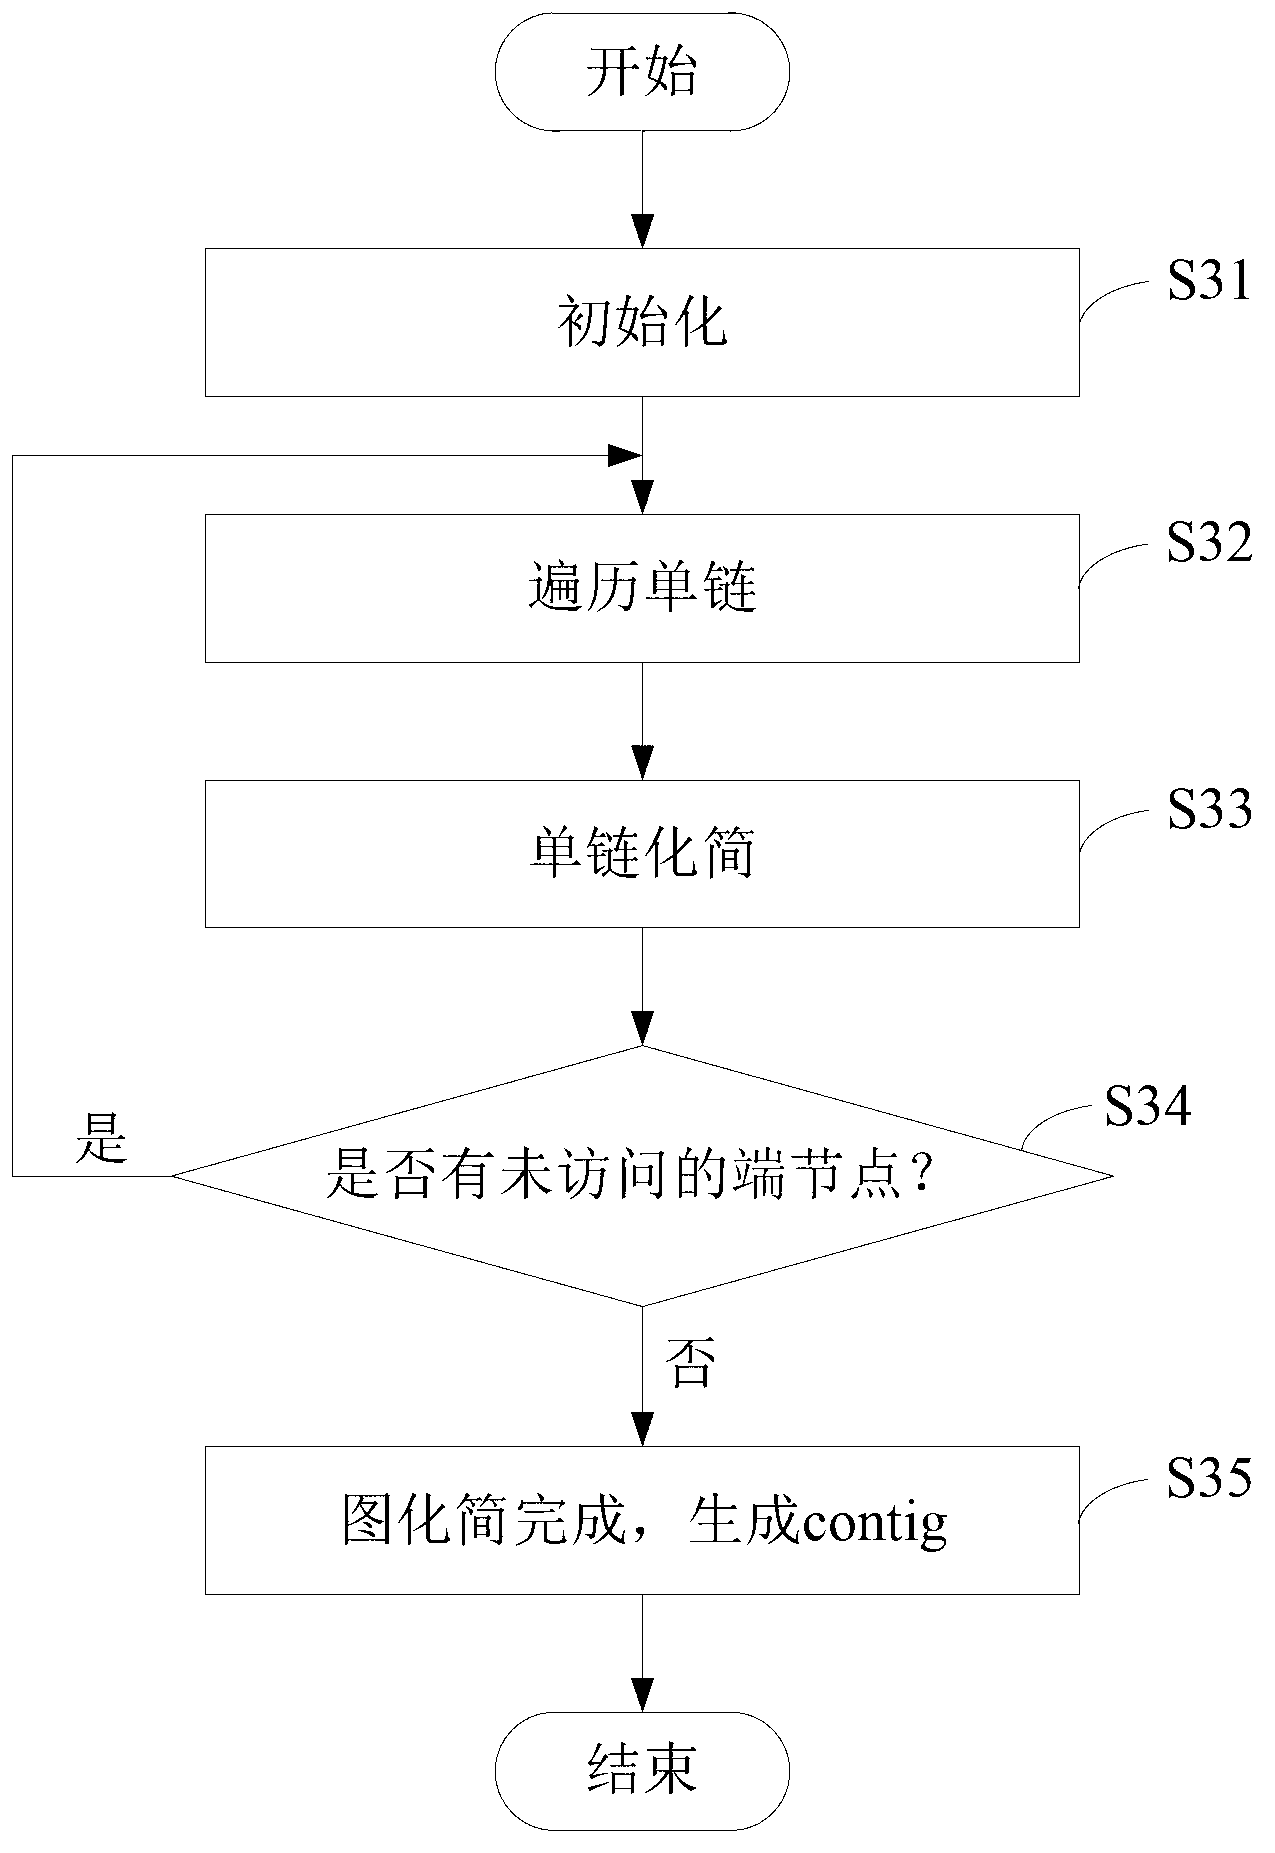 Parallel gene splicing method based on De Bruijn graph